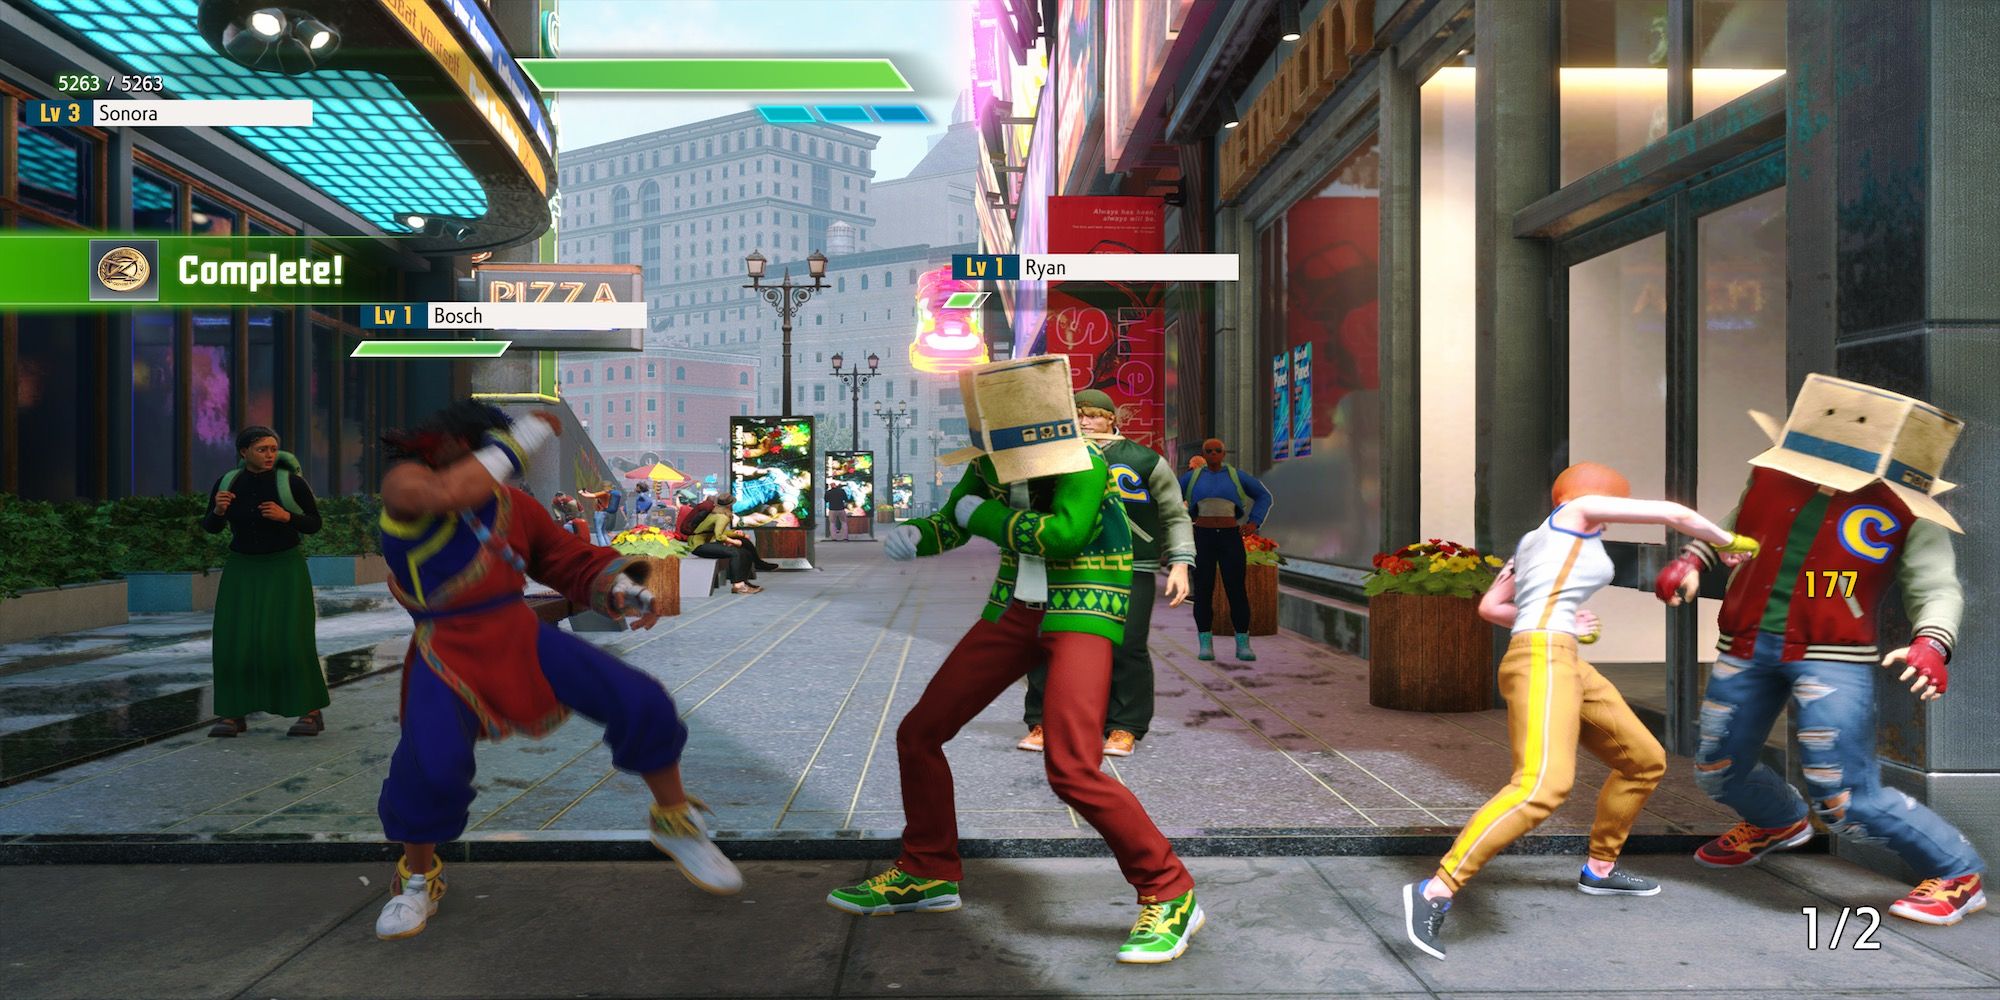 Fighting enemies in Street Fighter 6